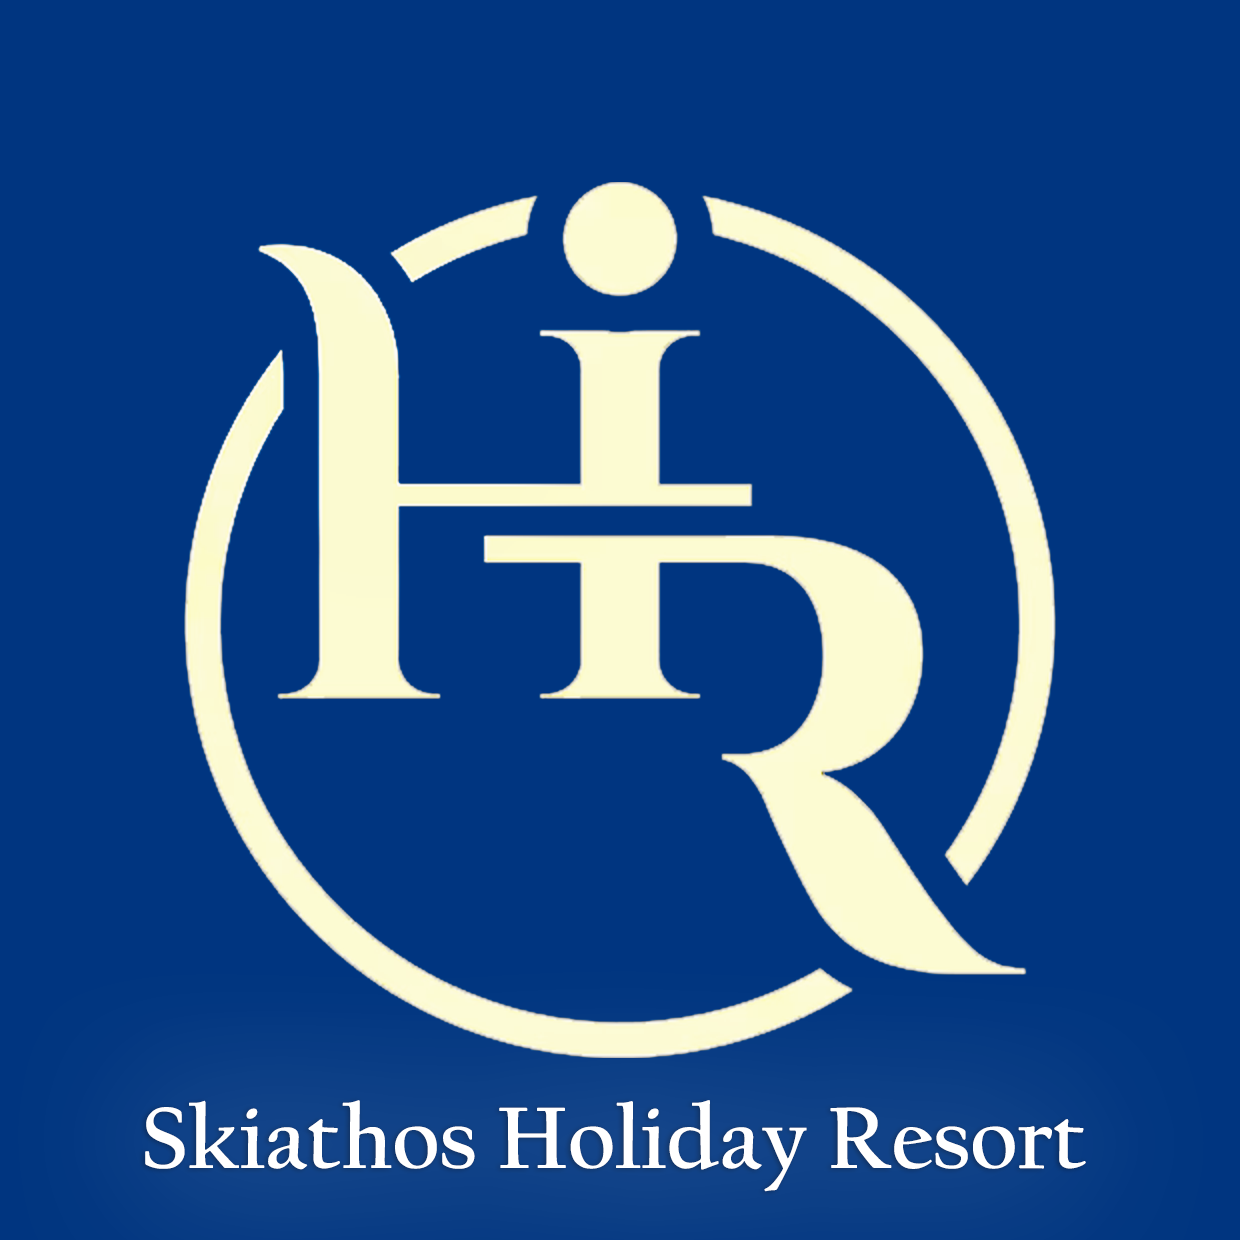 Skiathos Holiday Resort | Skiathos Holiday Resort